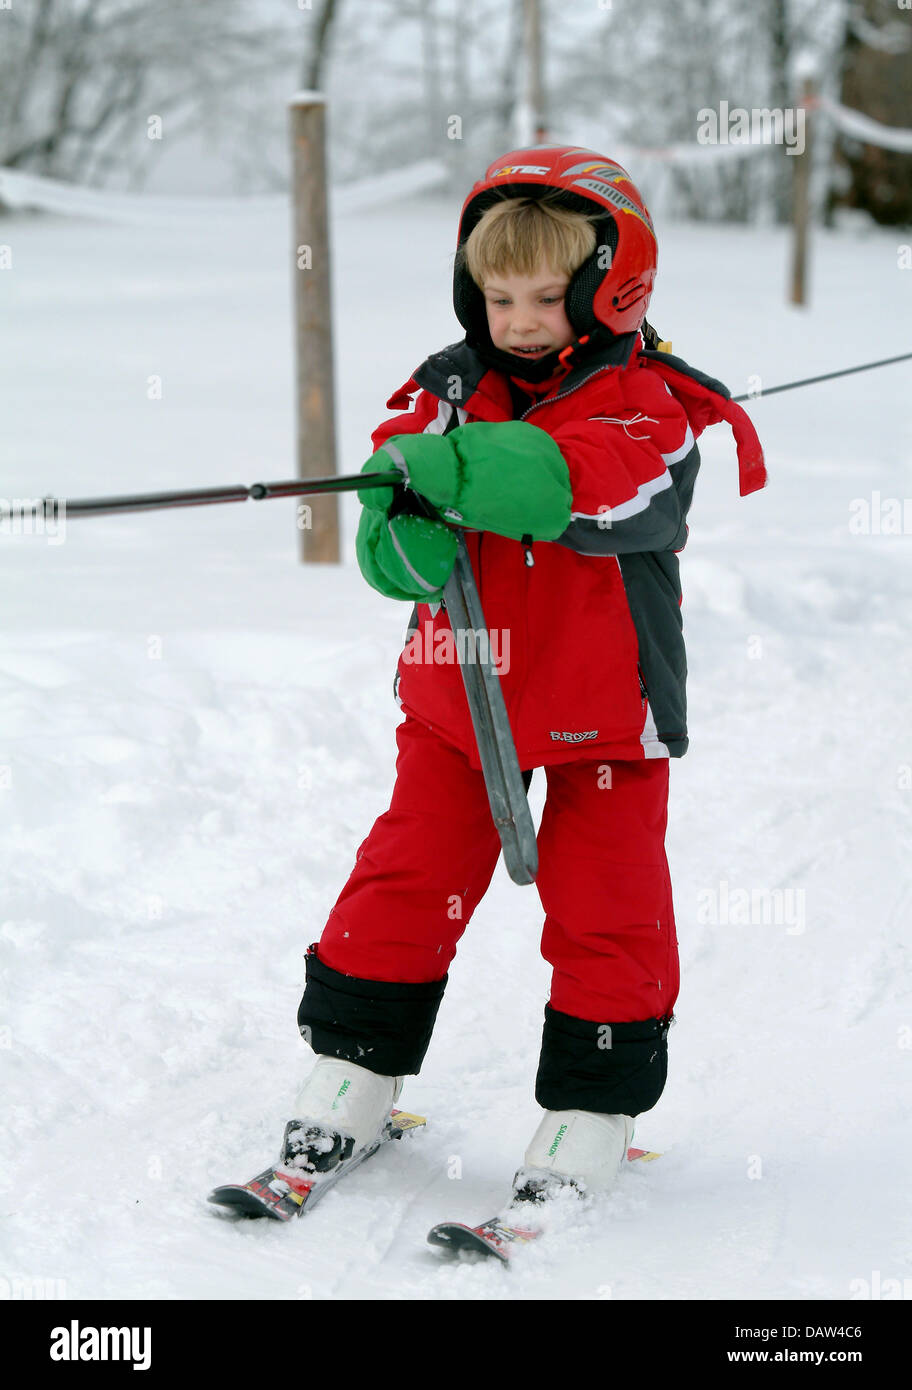 Eine Mädchen verwendet einen Skilift während ein SBZ-Skikurs für Kinder in Missen, Deutschland, 28. Dezember 2007. Foto: Rolf Schultes Stockfoto